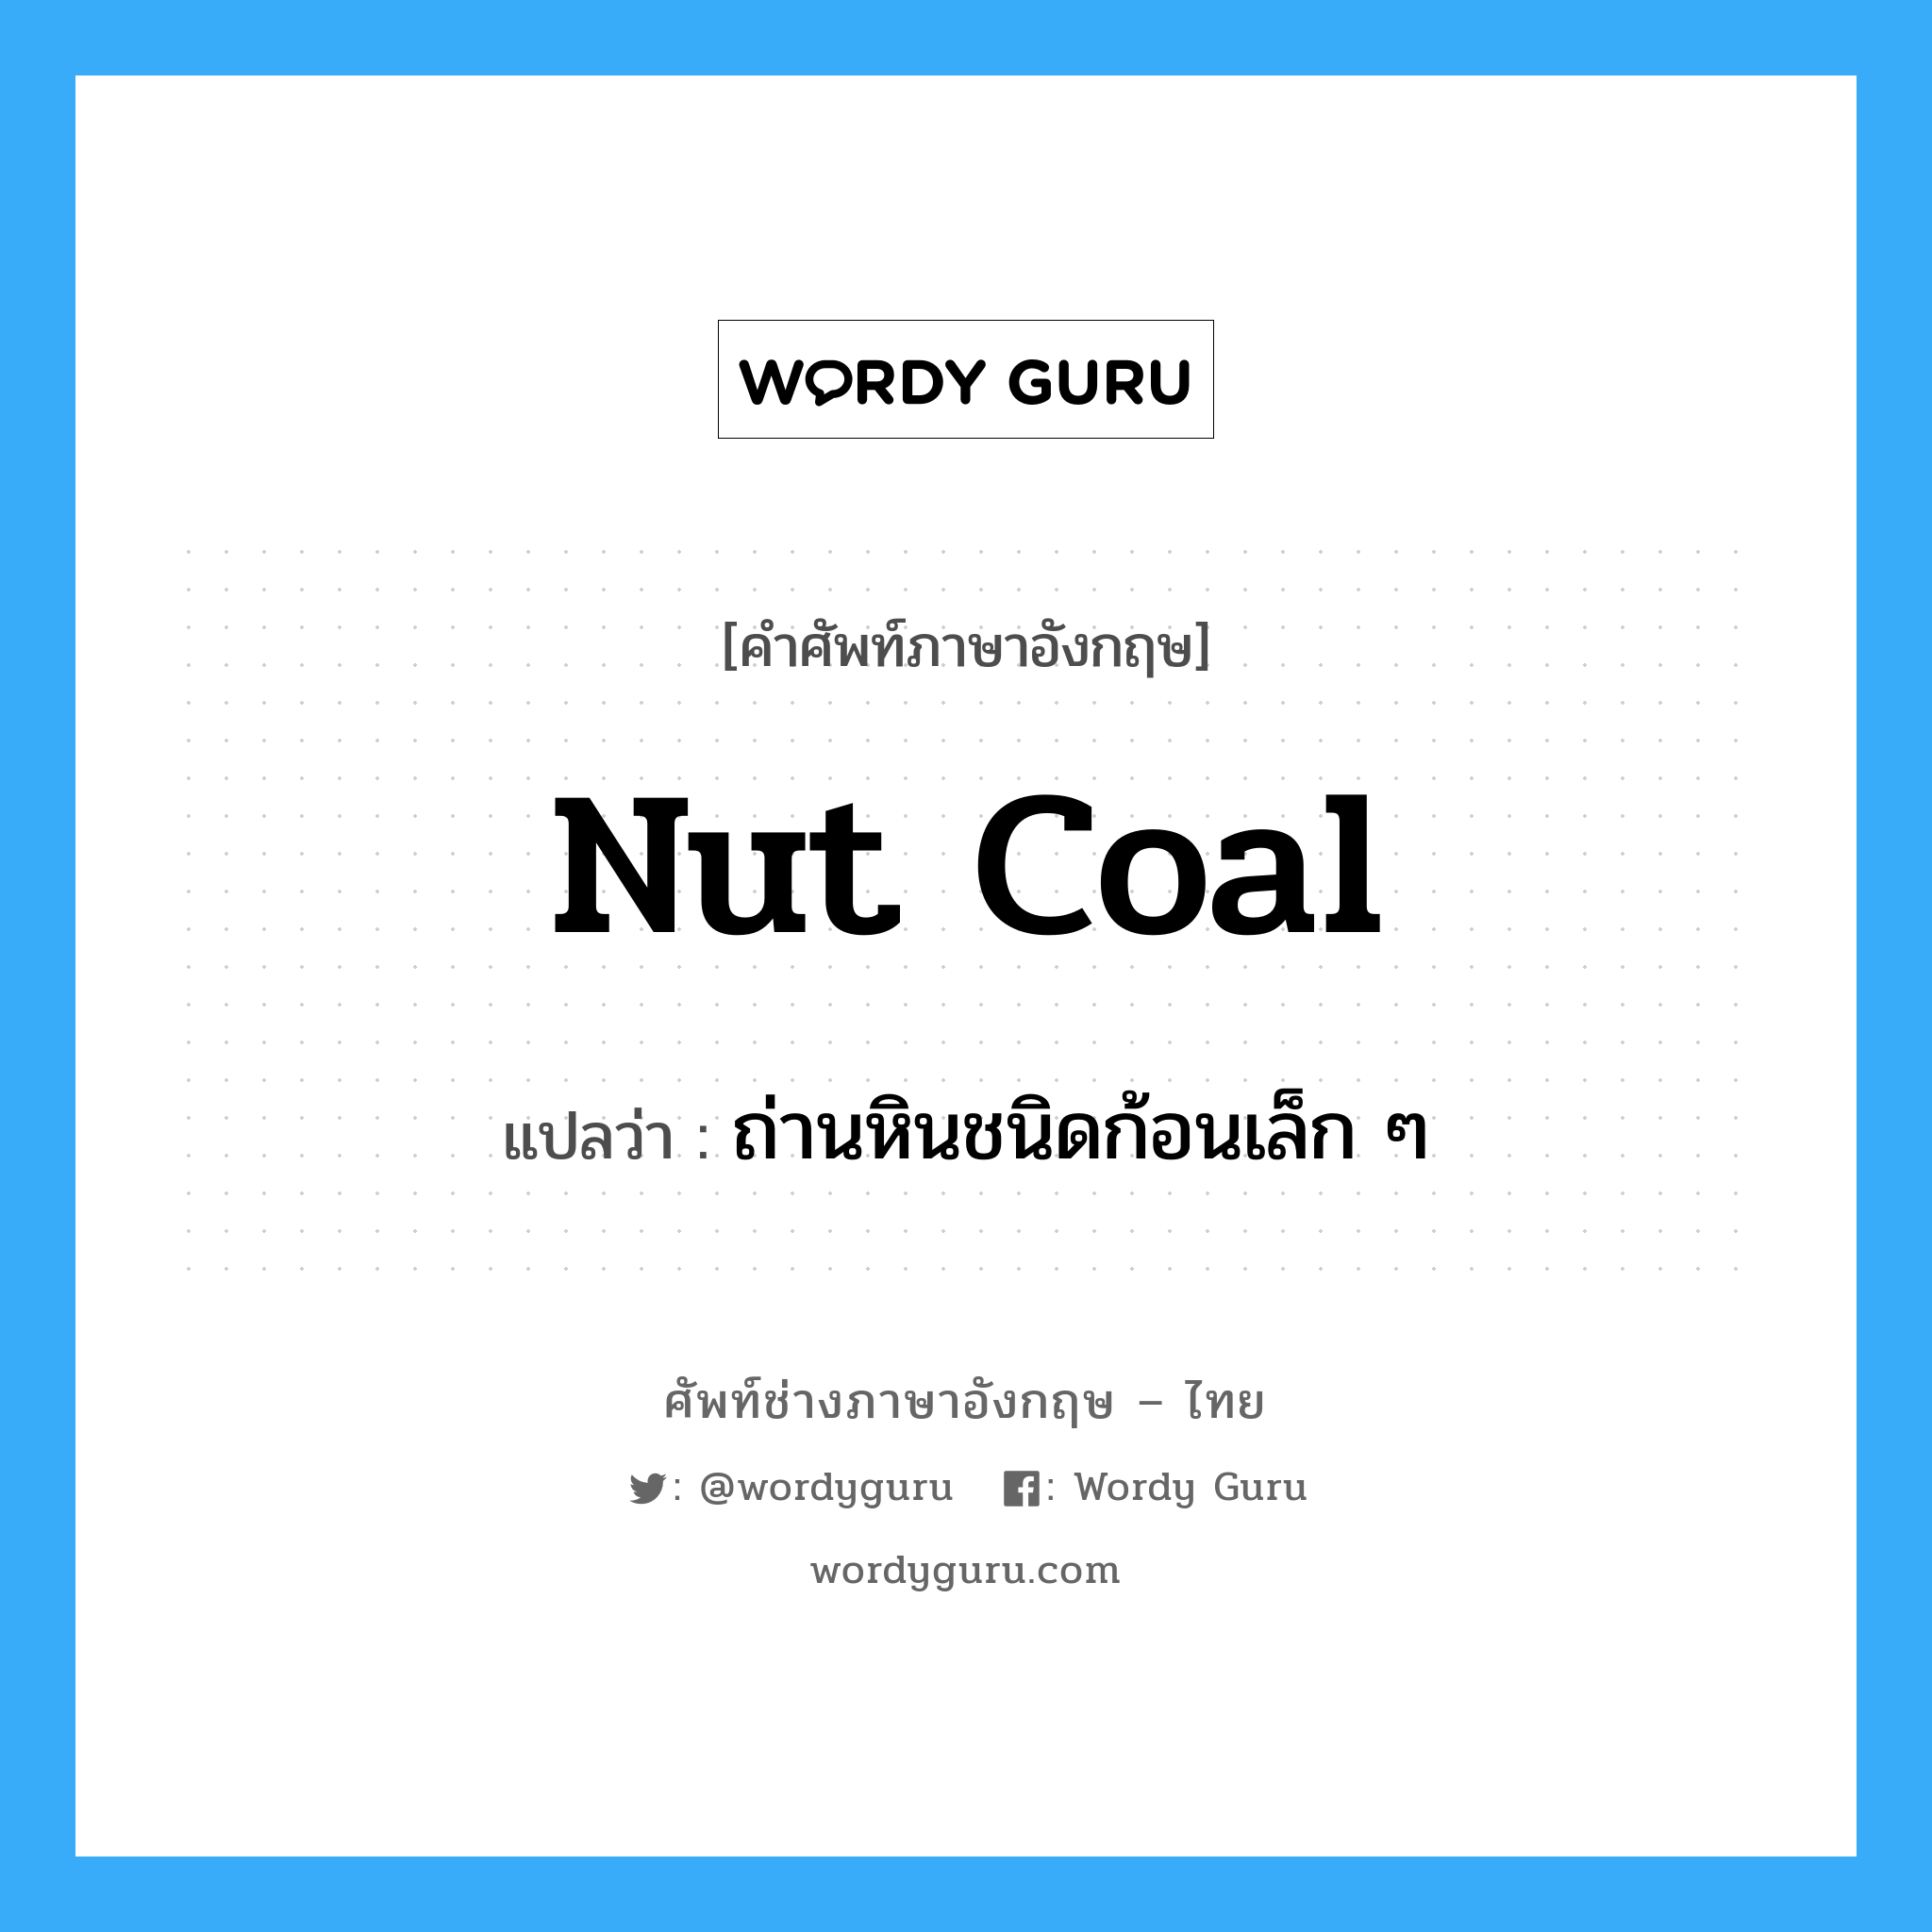 ถ่านหินชนิดก้อนเล็ก ๆ ภาษาอังกฤษ?, คำศัพท์ช่างภาษาอังกฤษ - ไทย ถ่านหินชนิดก้อนเล็ก ๆ คำศัพท์ภาษาอังกฤษ ถ่านหินชนิดก้อนเล็ก ๆ แปลว่า nut coal